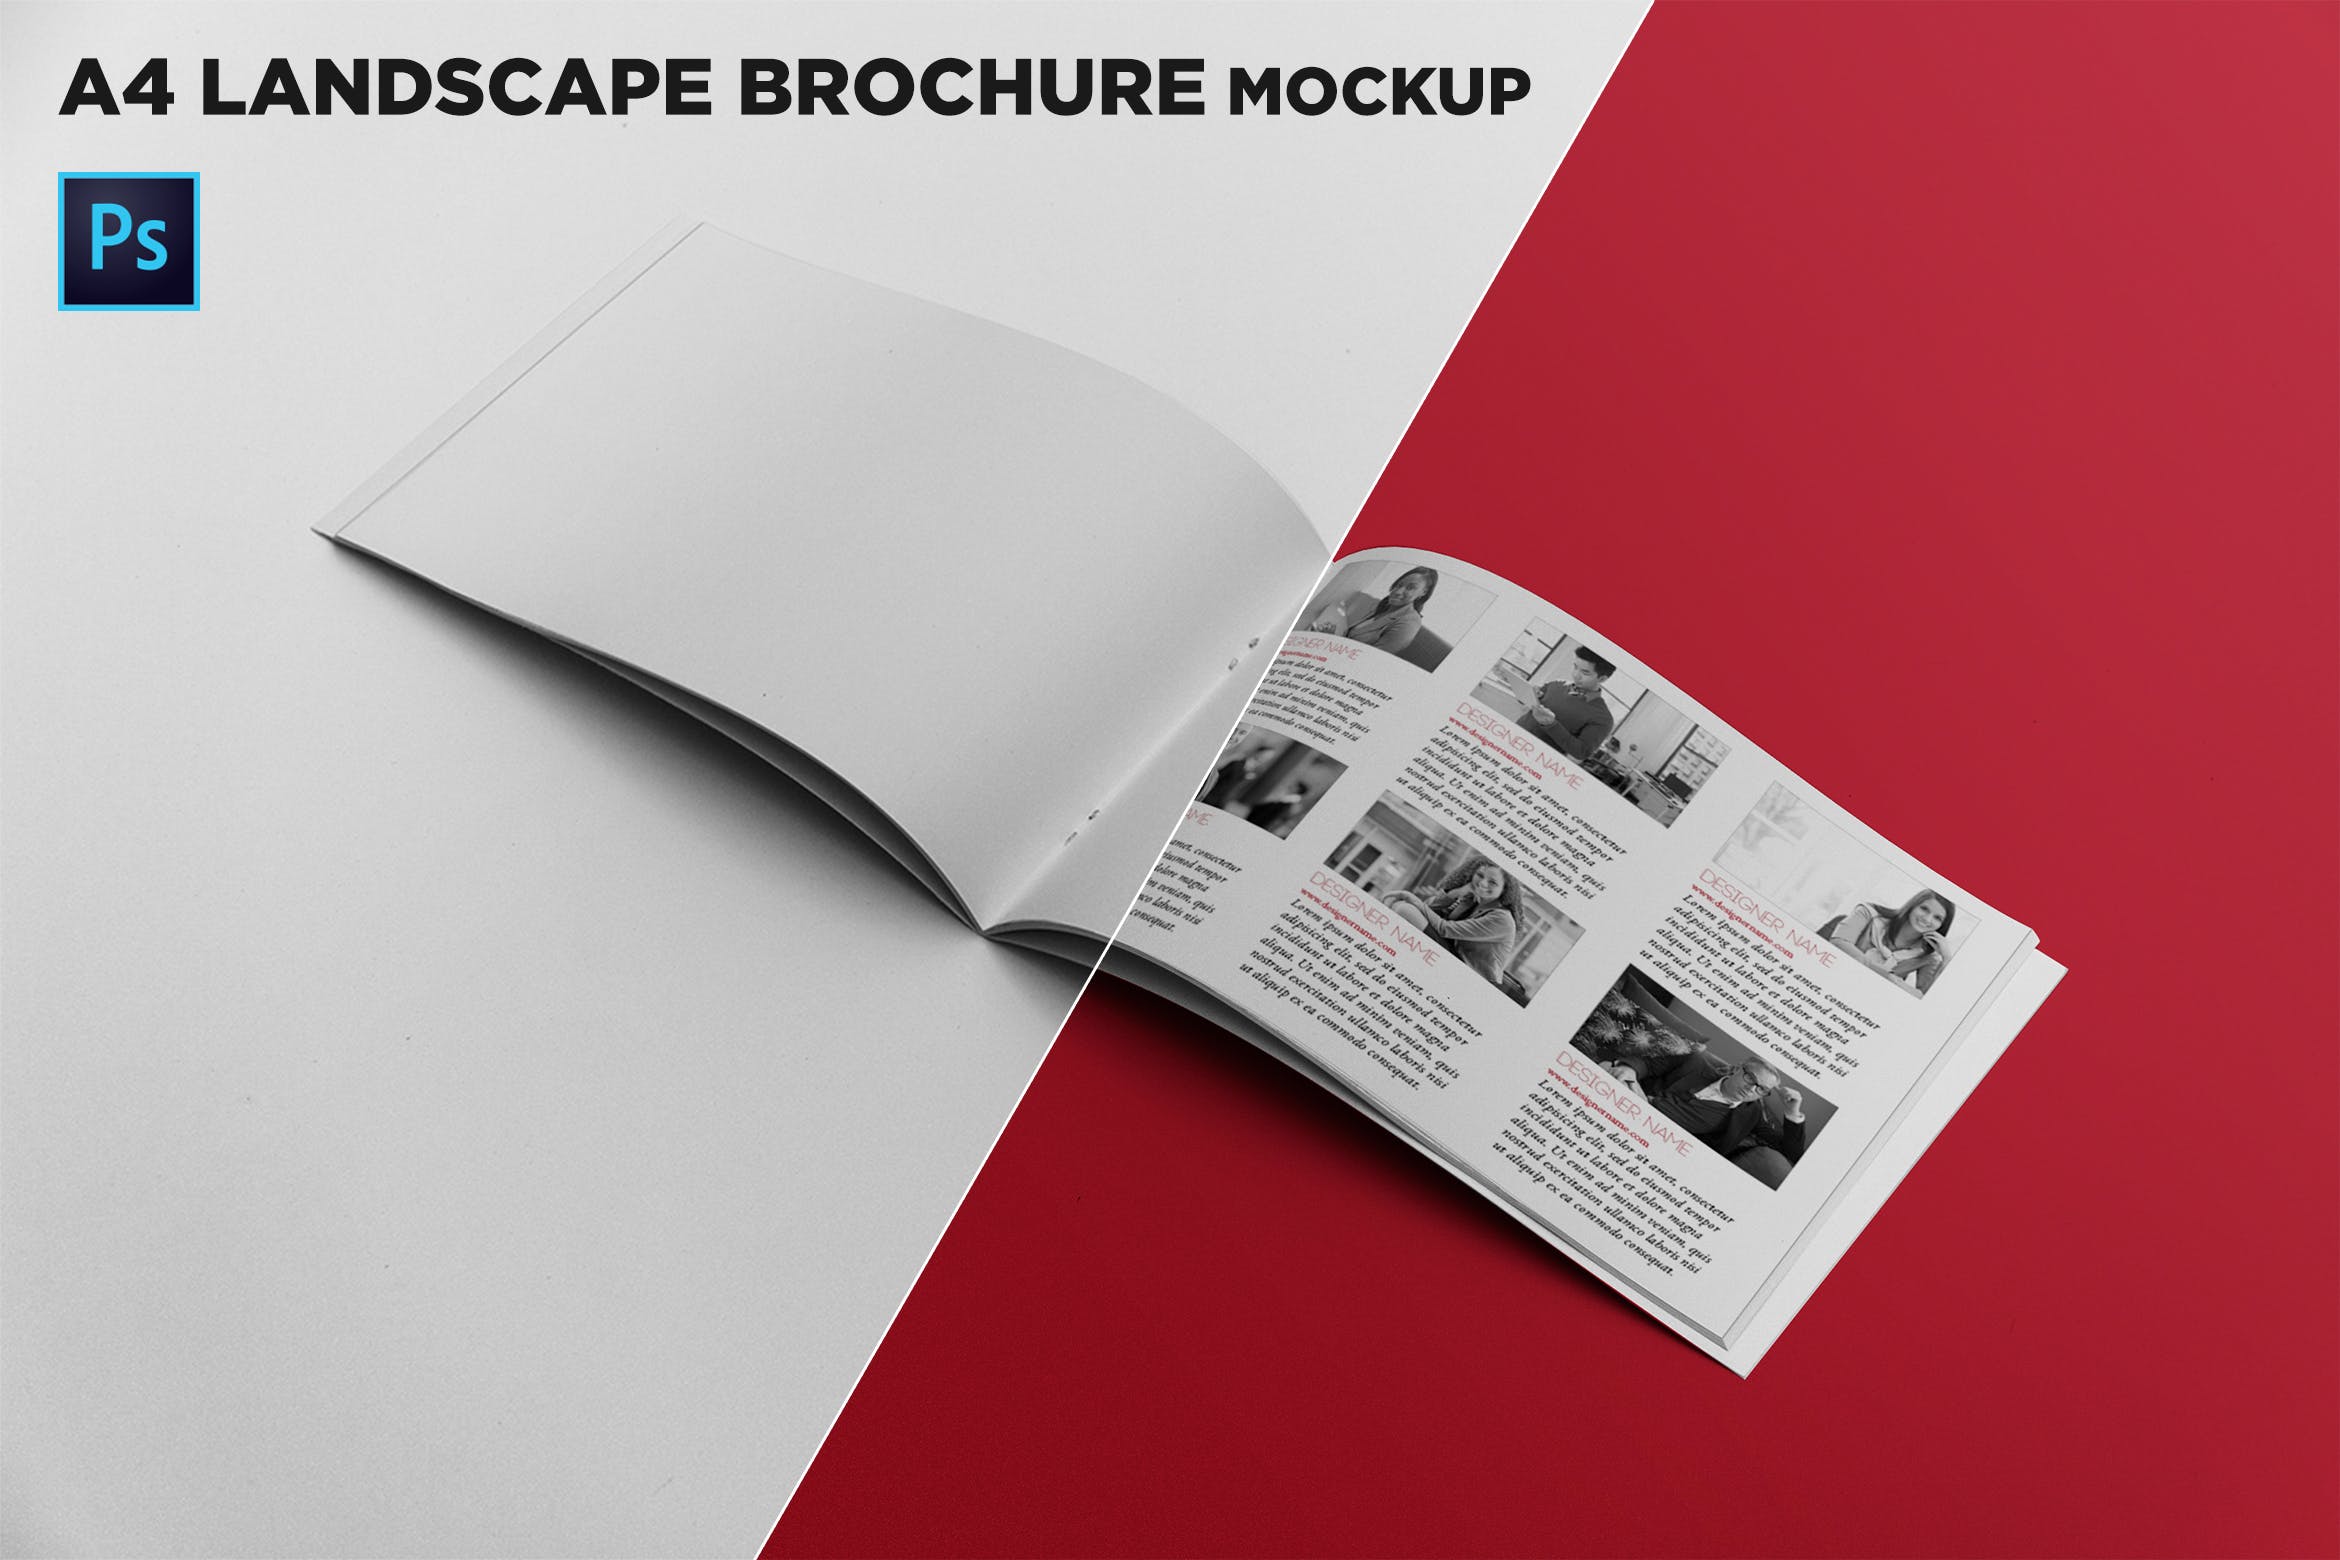 宣传画册/企业画册内页版式设计图样机16图库精选 Open Landscape Brochure Mockup插图